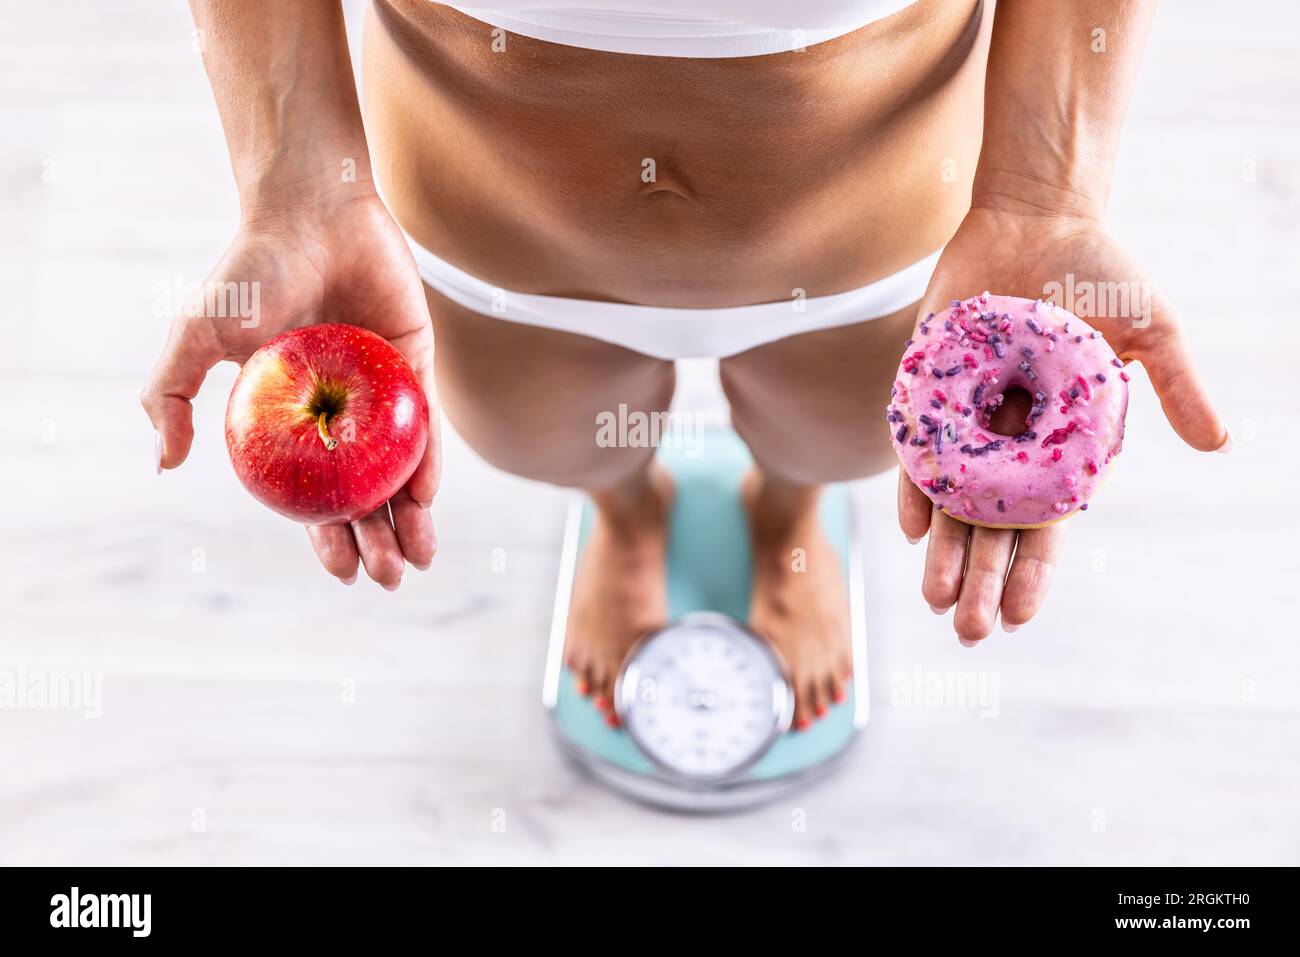 Sportliche Frau mit einem perfekten Körper, der Gewicht auf der Waage misst und einen Donut und einen roten Apfel hält.gesundes oder ungesundes Lifestyle Konzept. Stockfoto